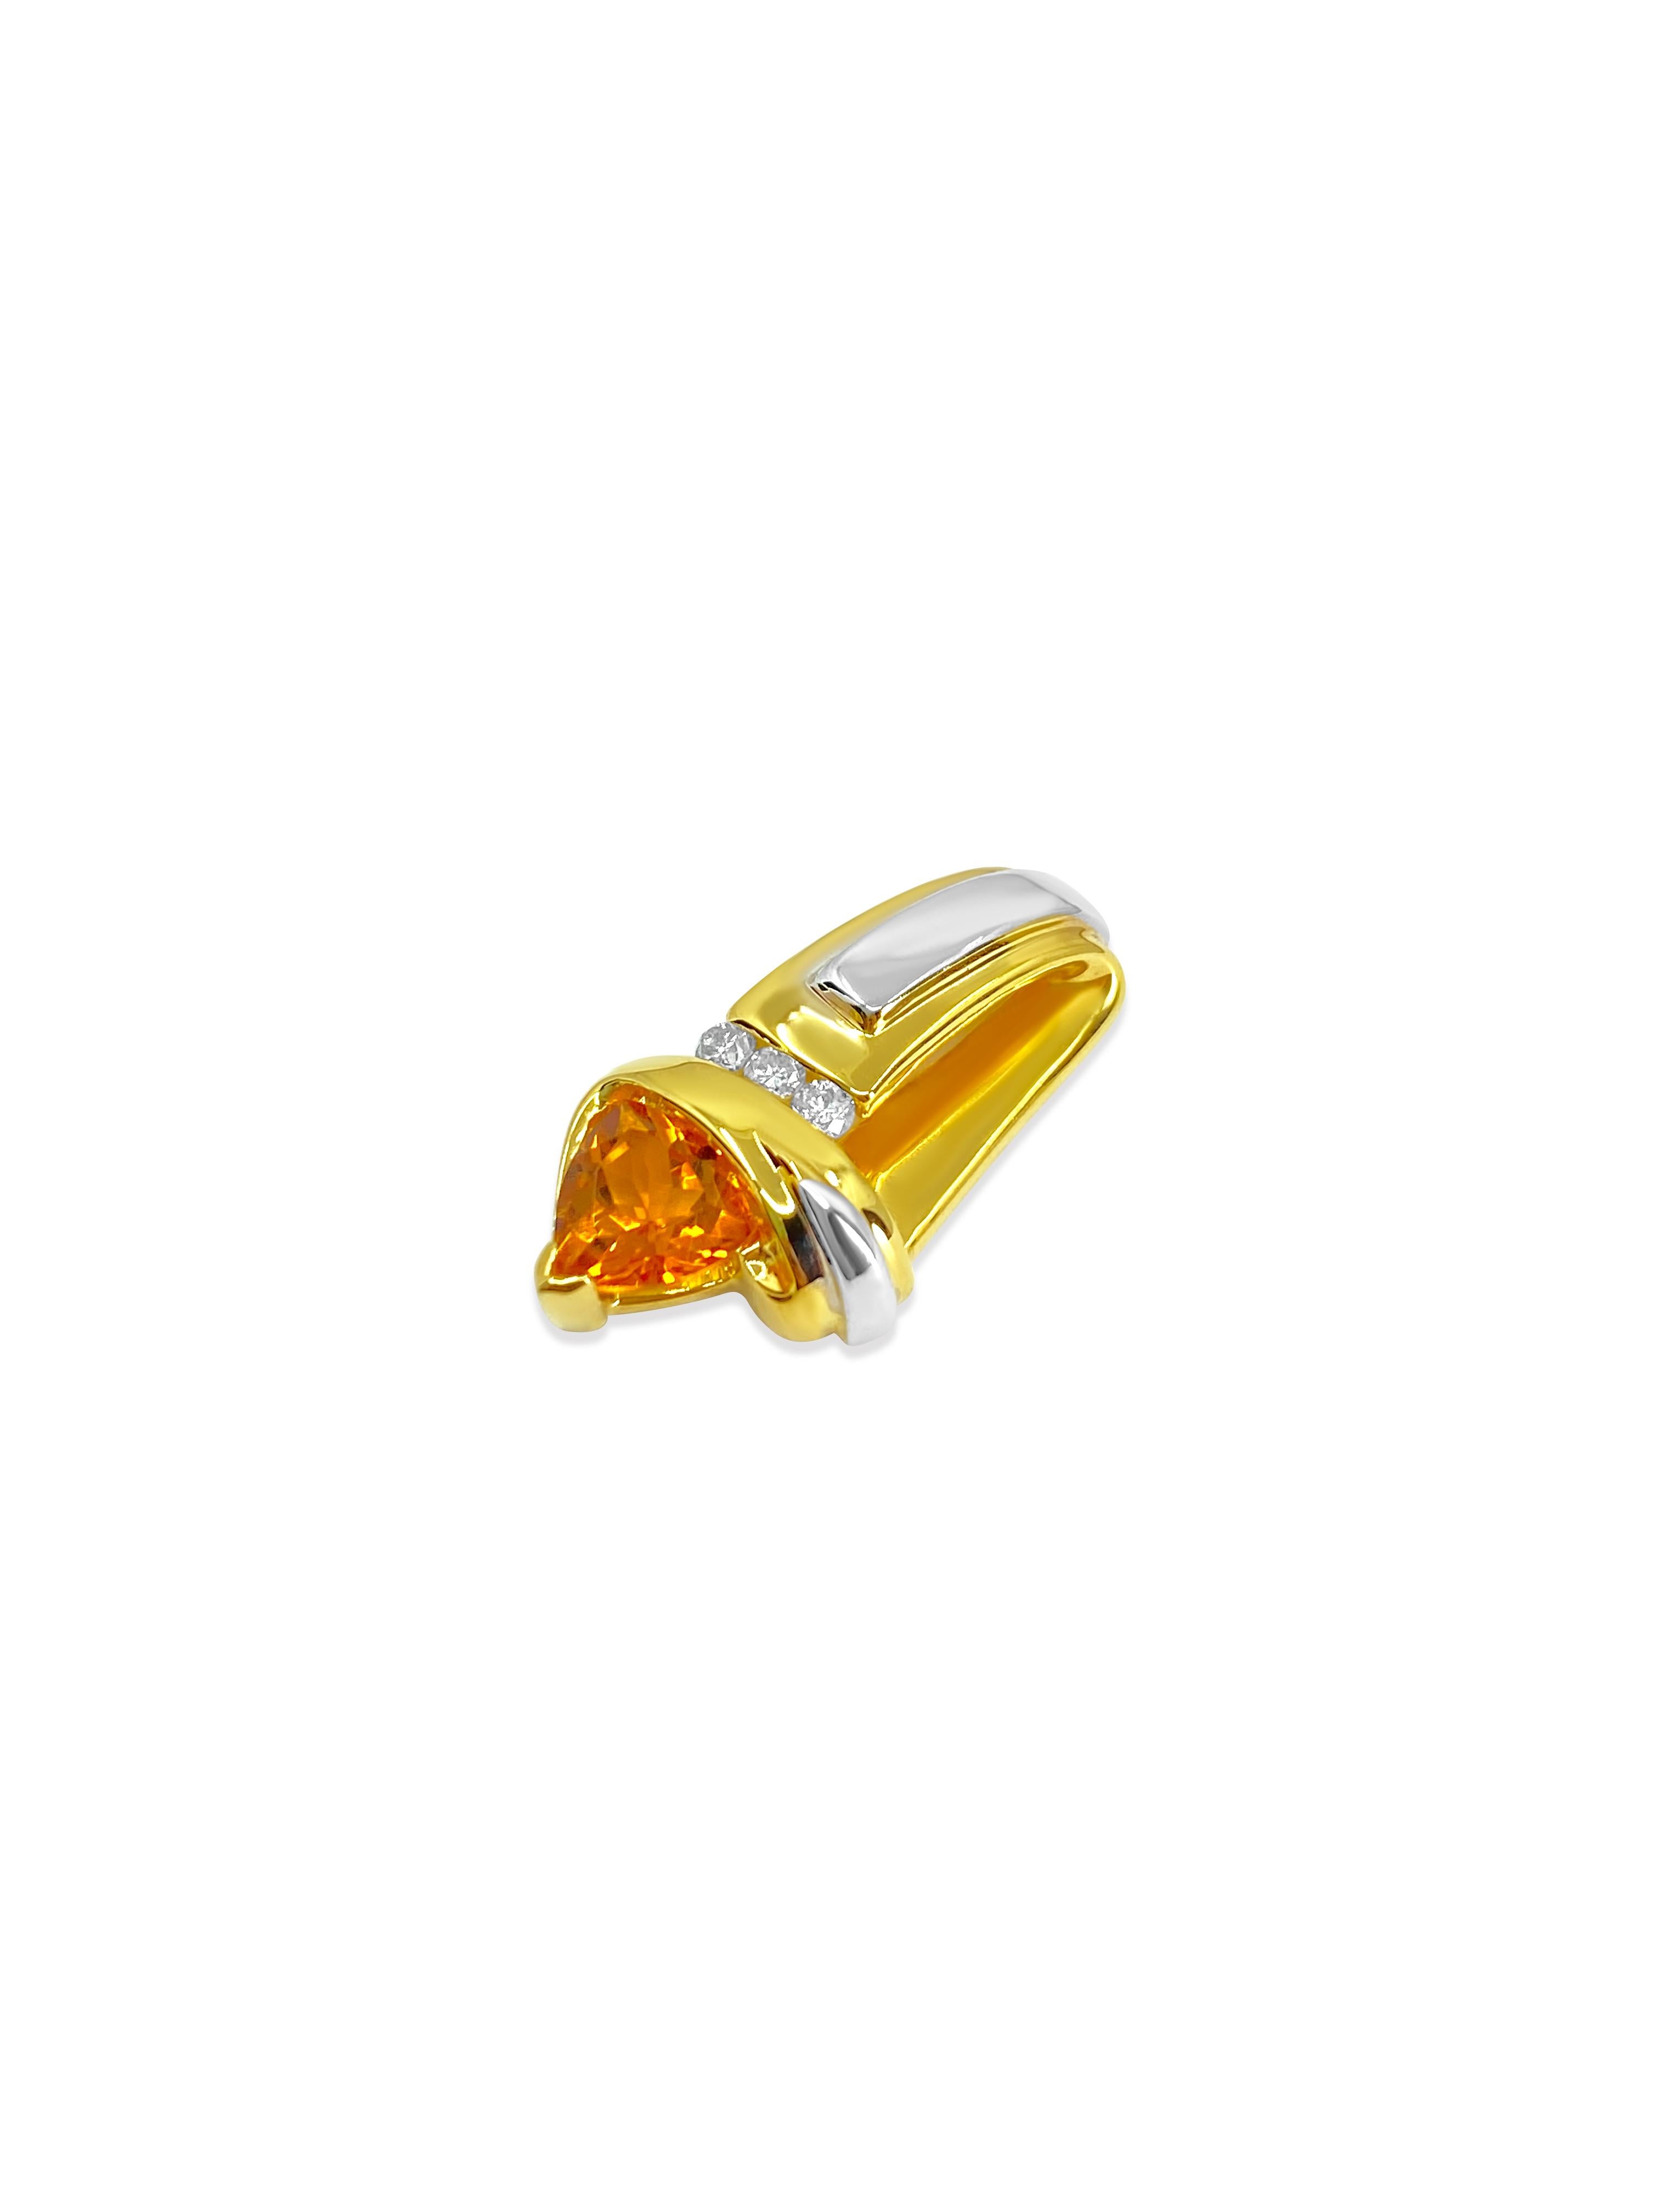 3.71 Carat Orange Sapphire & Diamond Pendant In Excellent Condition For Sale In Miami, FL